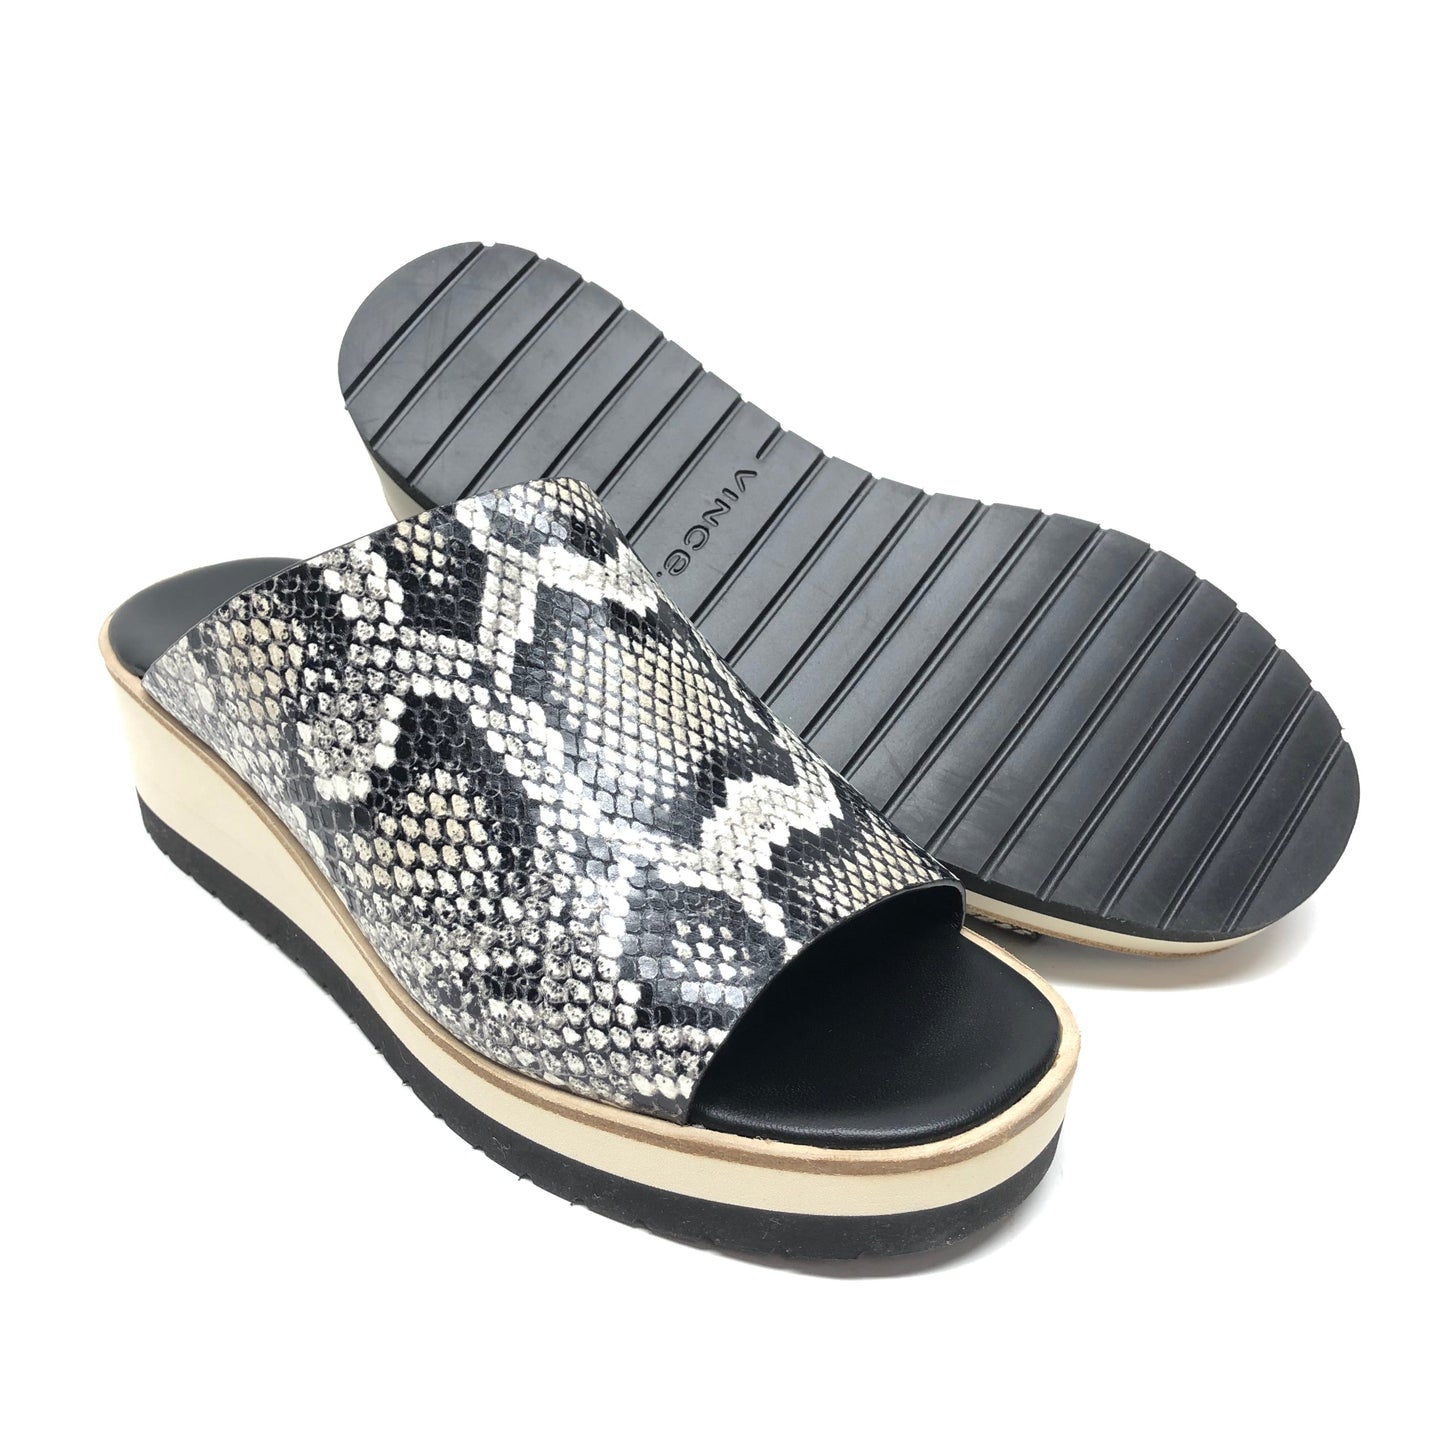 Snakeskin Print Sandals Heels Platform Vince, Size 6.5